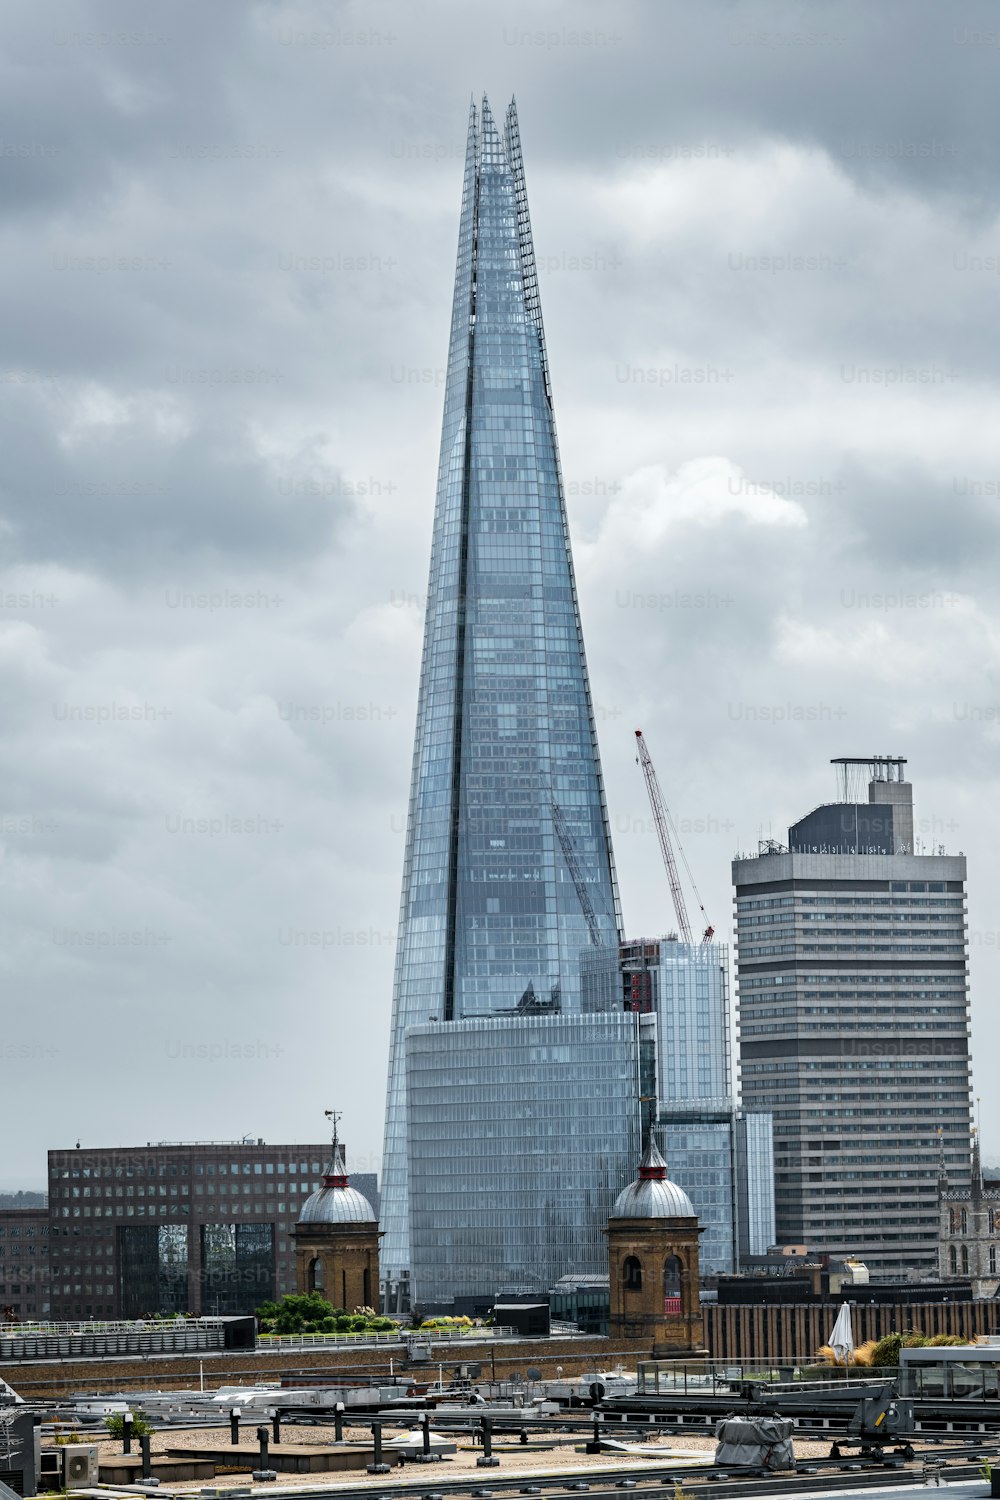 Londoner Stadtbild mit dem Shard im Hintergrund, dem höchsten Wolkenkratzer Westeuropas.